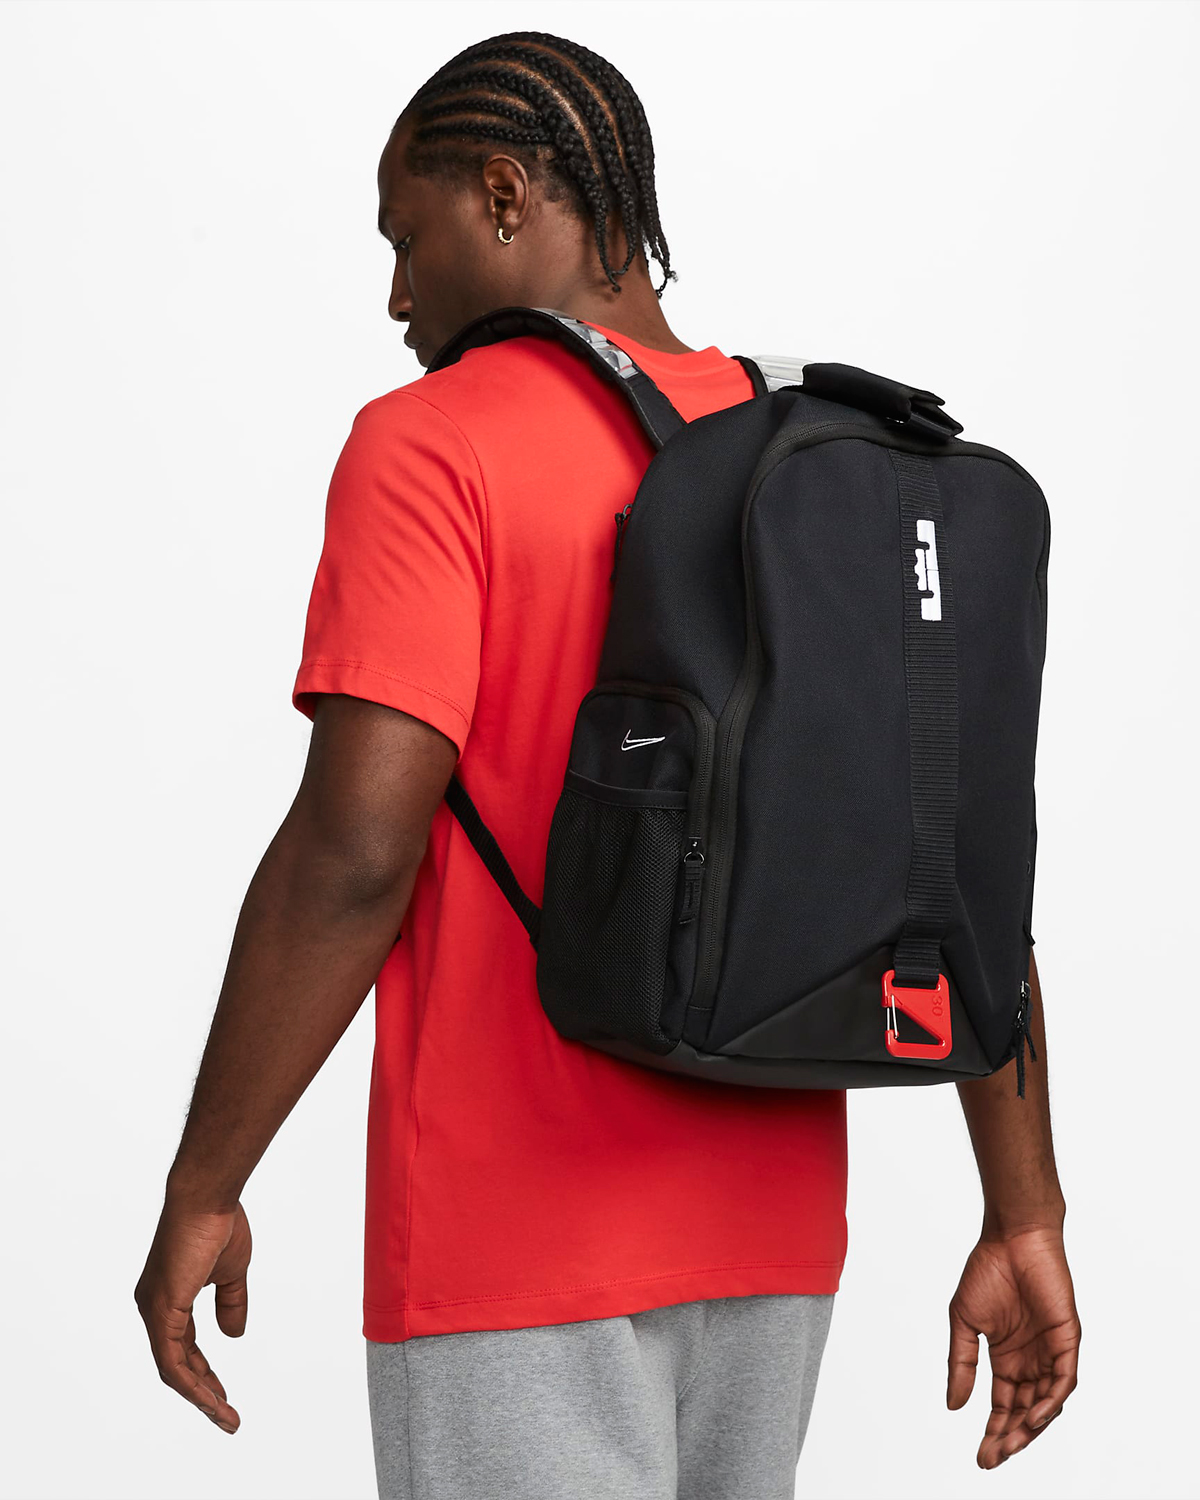 Nike-LeBron-20-Backpack-Black-Red-1